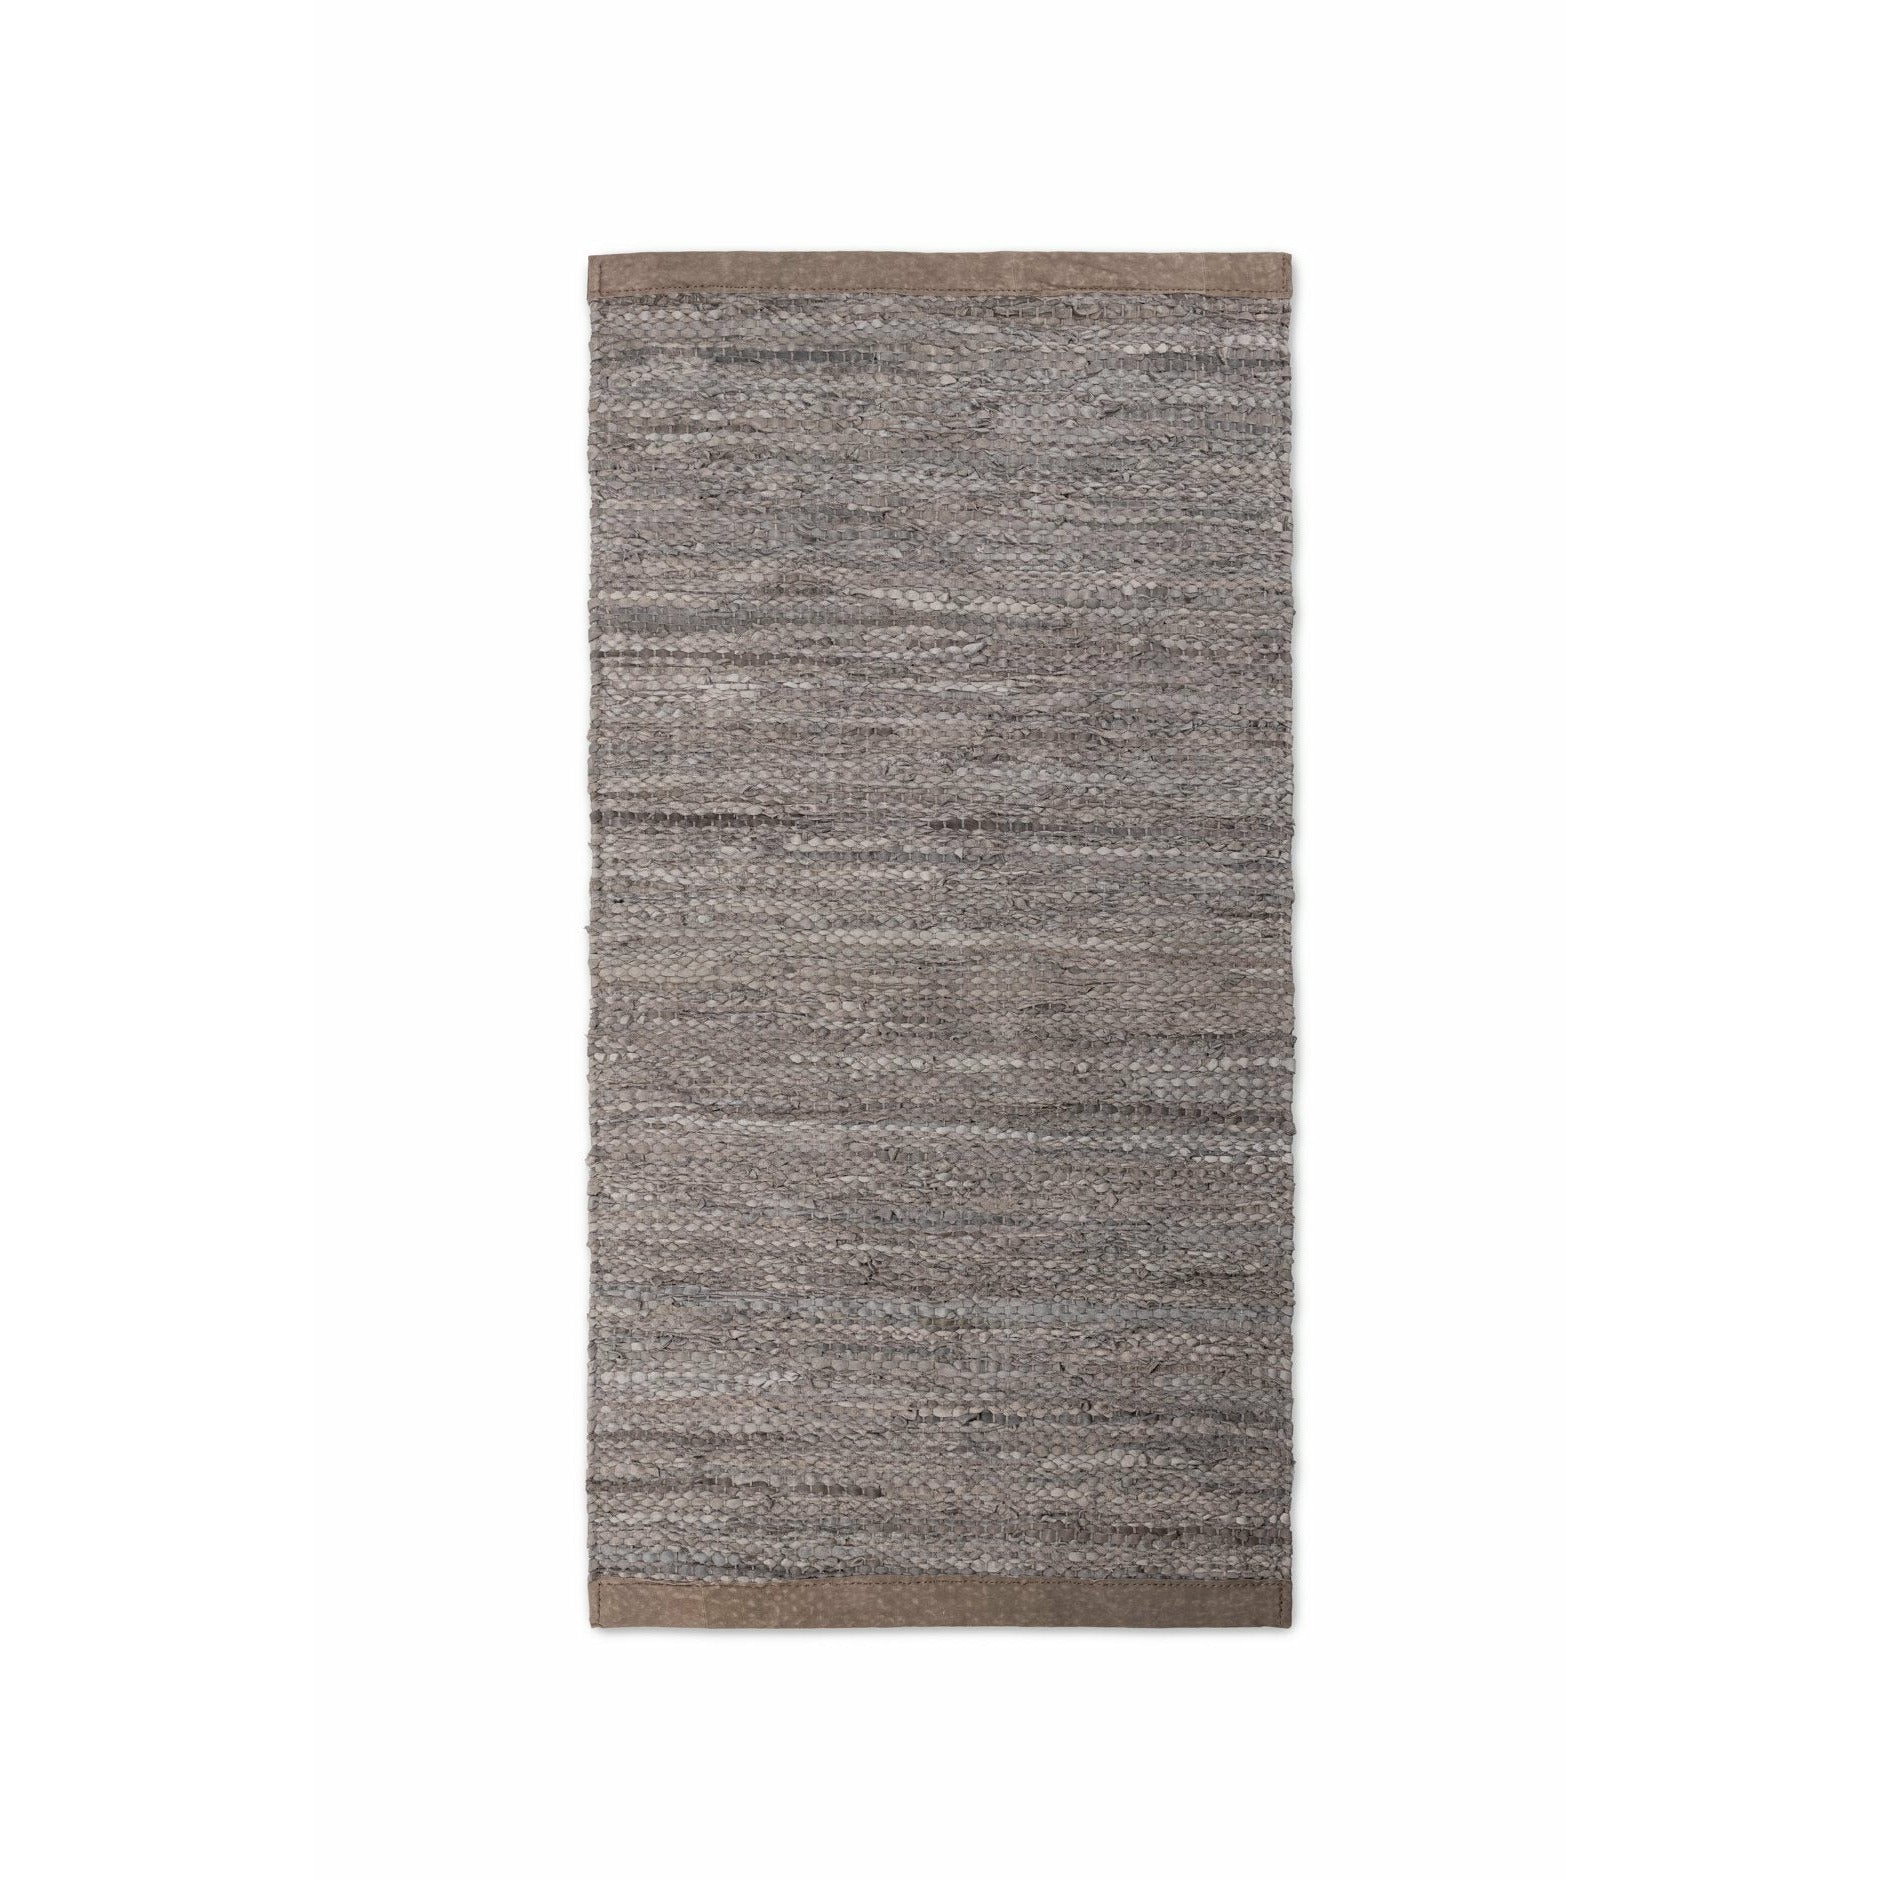 Tappeto in legno con moquette in pelle solida, 65 x 135 cm